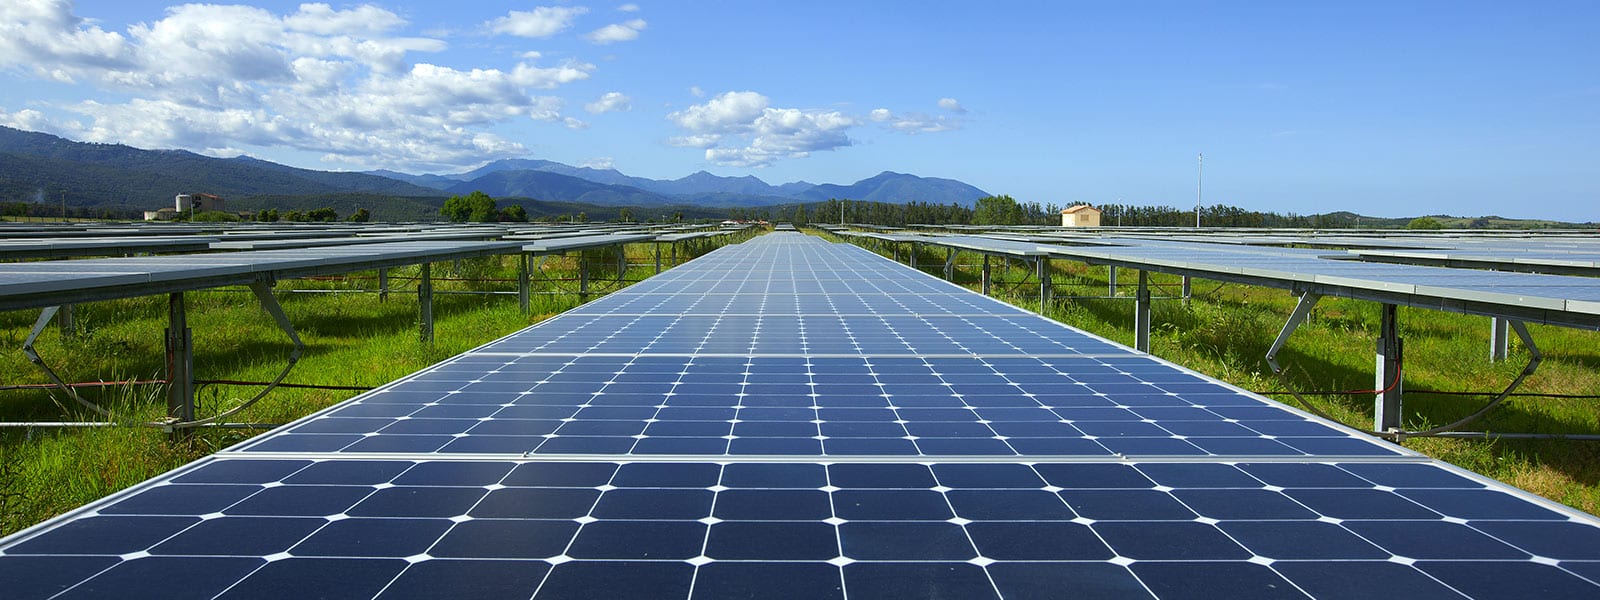 Nouvelles du soleil en Corrèze : construction de la centrale solaire photovoltaïque de Gane Lachaud